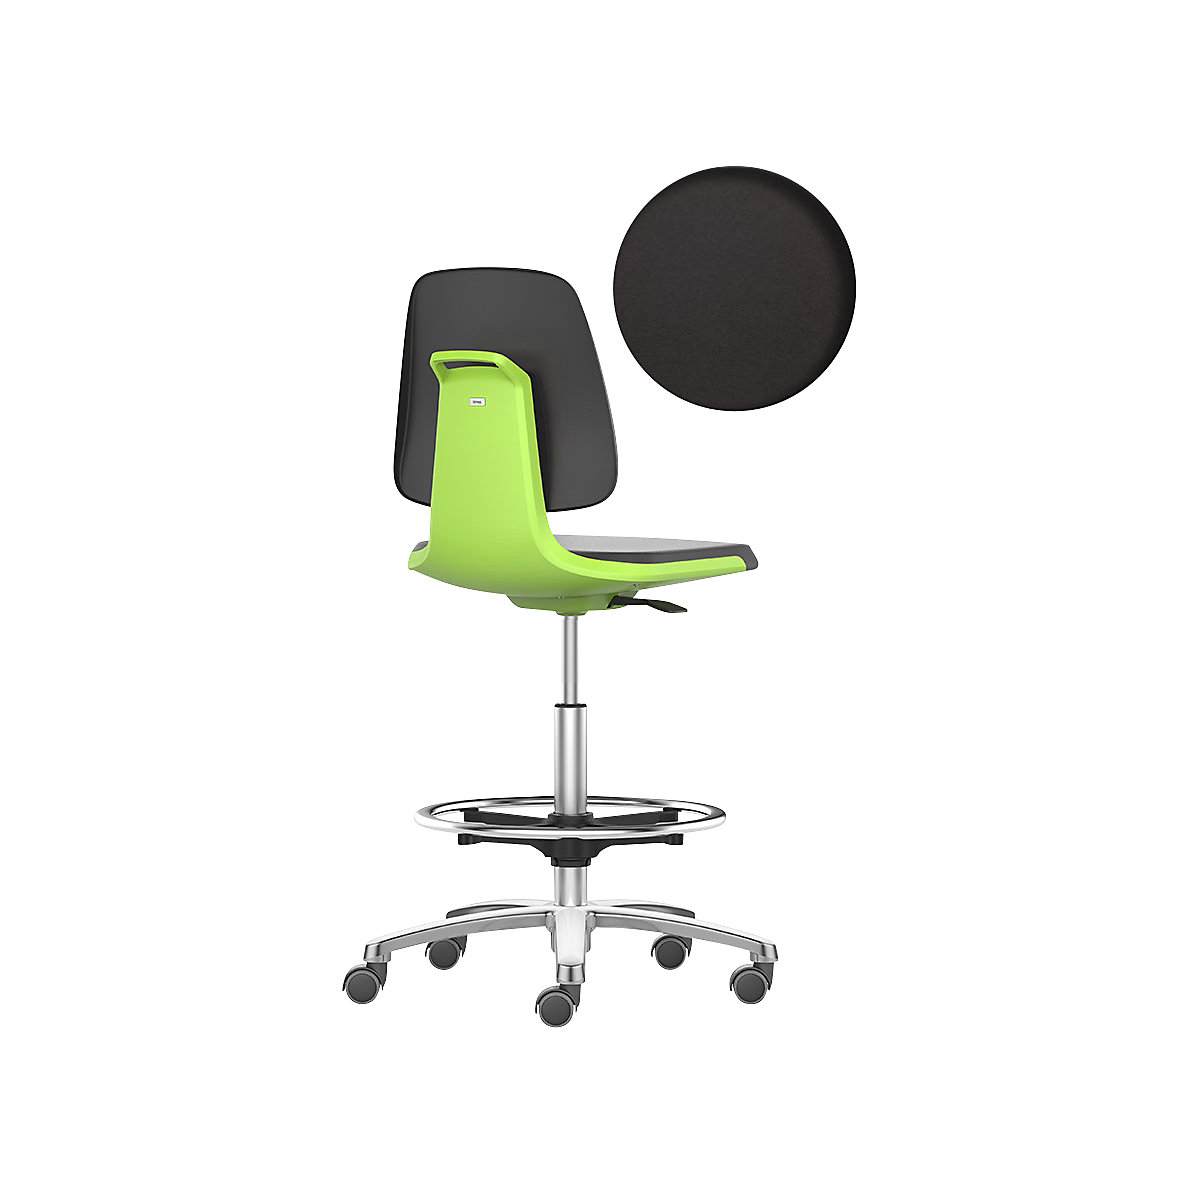 bimos Arbeitsdrehstuhl LABSIT, Hochstuhl mit Sitz-Stopp-Rollen und Fußring, Sitz aus PU-Schaum, grün